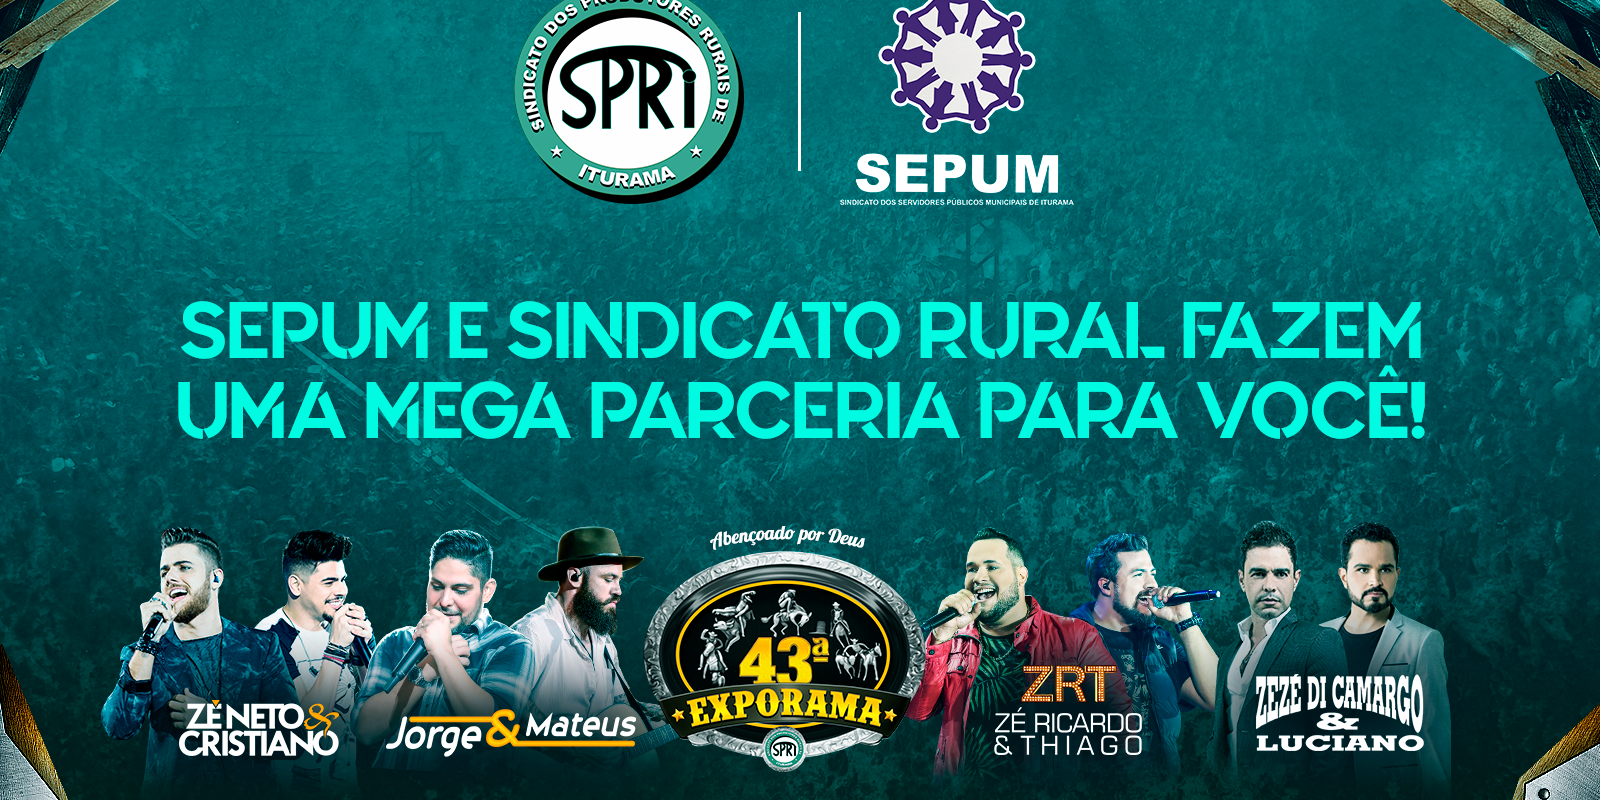 SEPUM fecha parceria com SPRI 